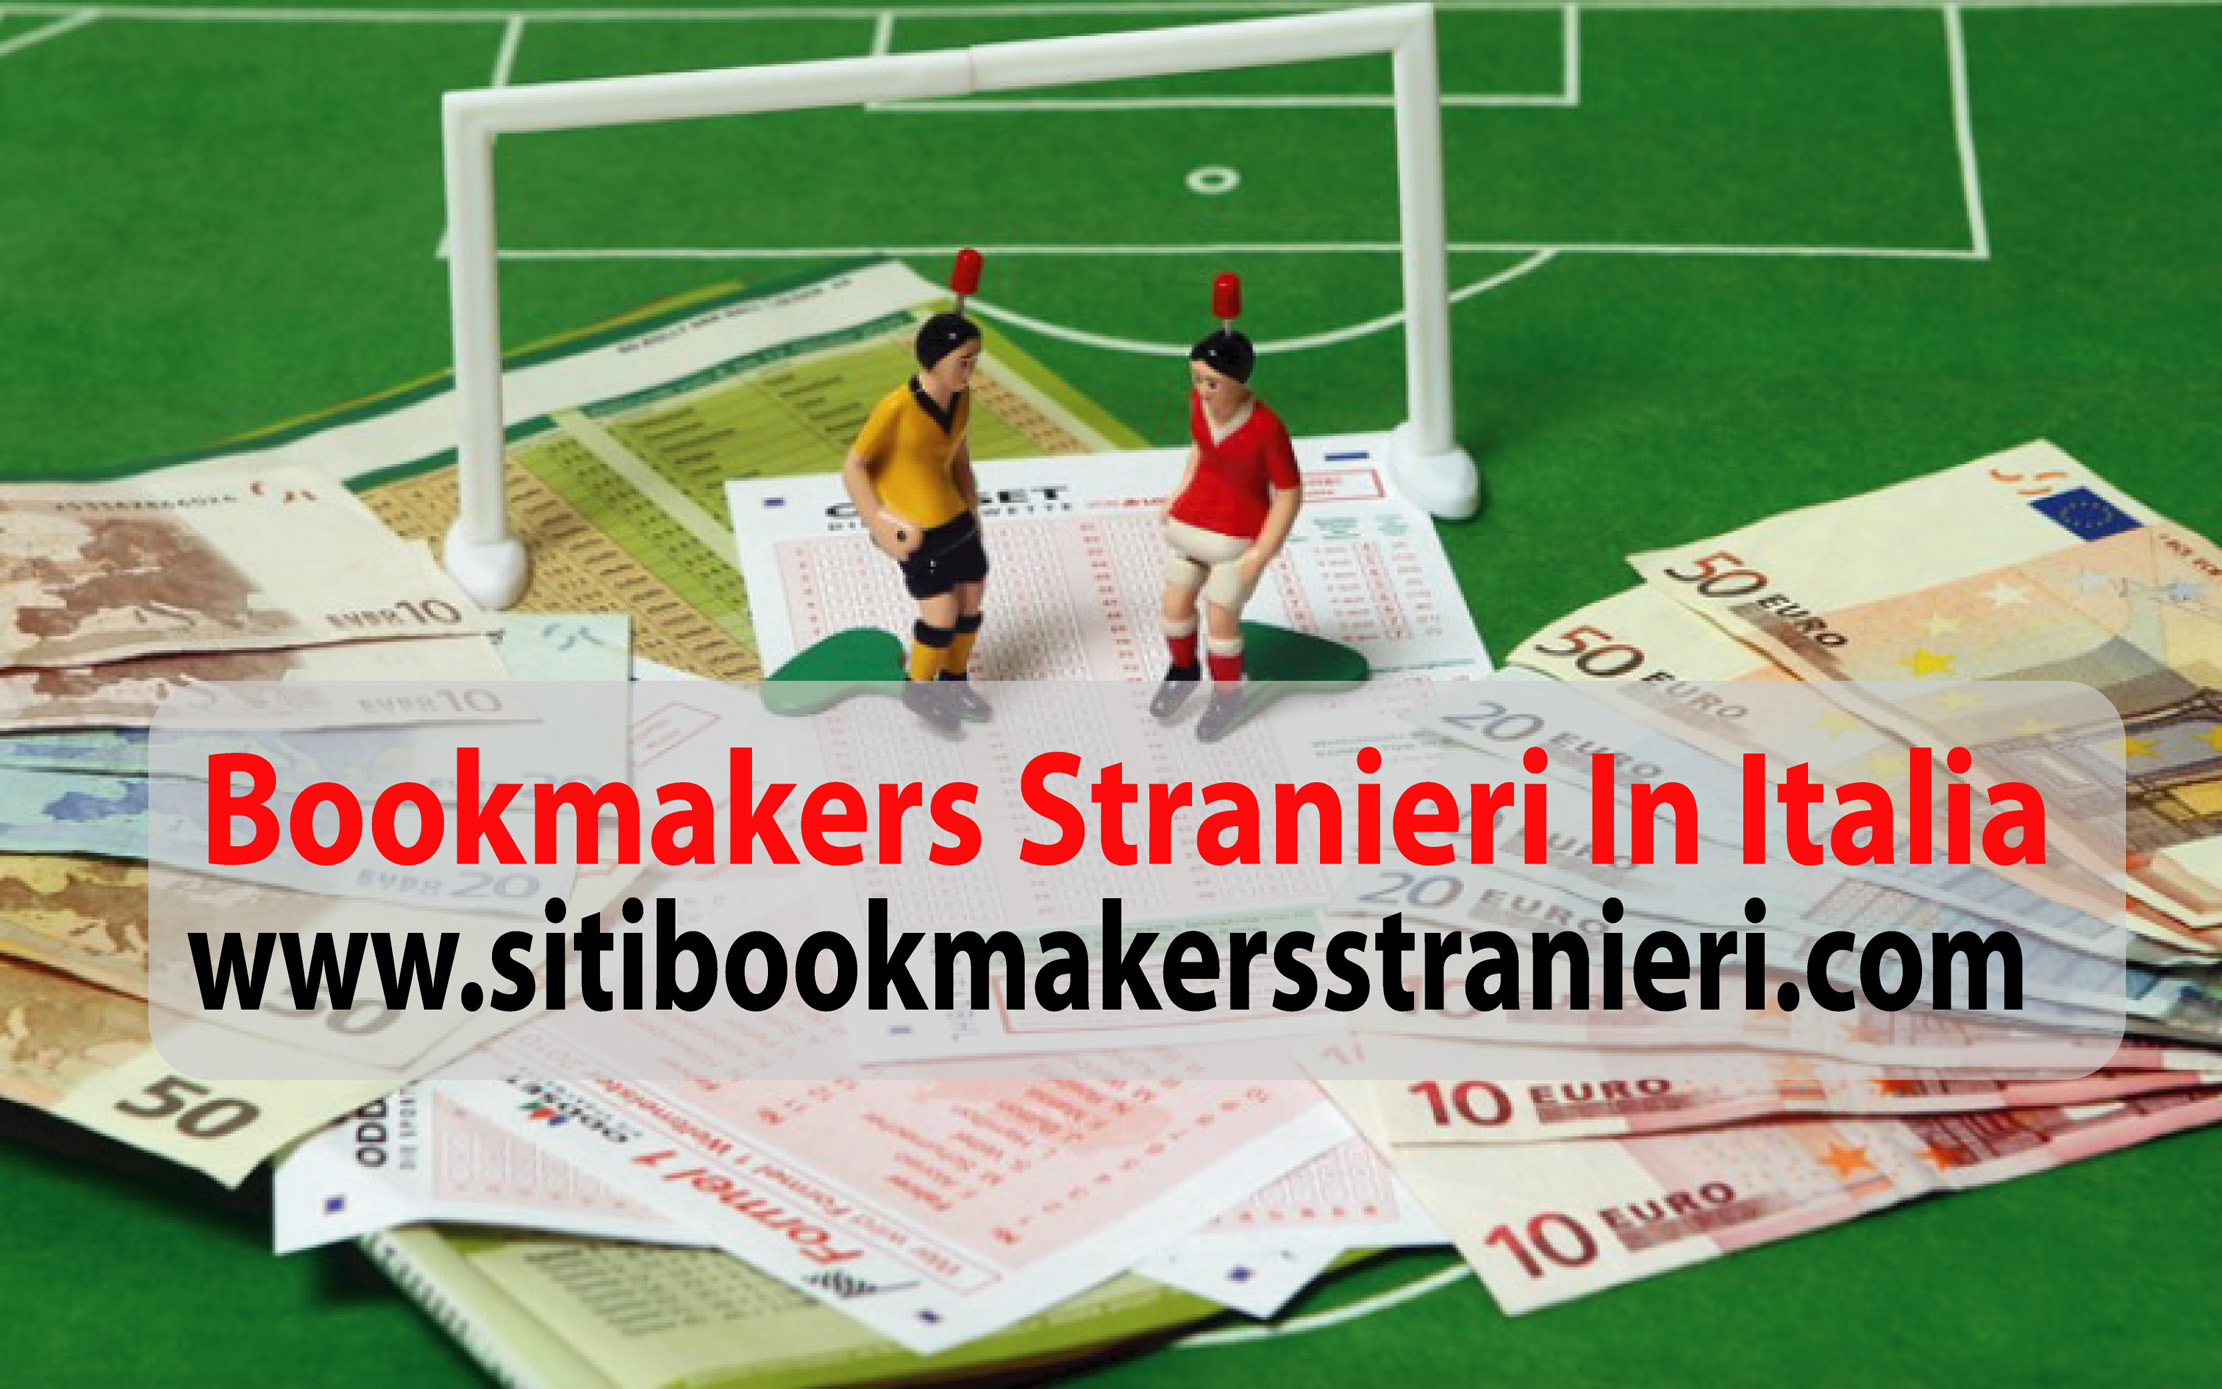 bookmakers stranieri in italia_8.jpg